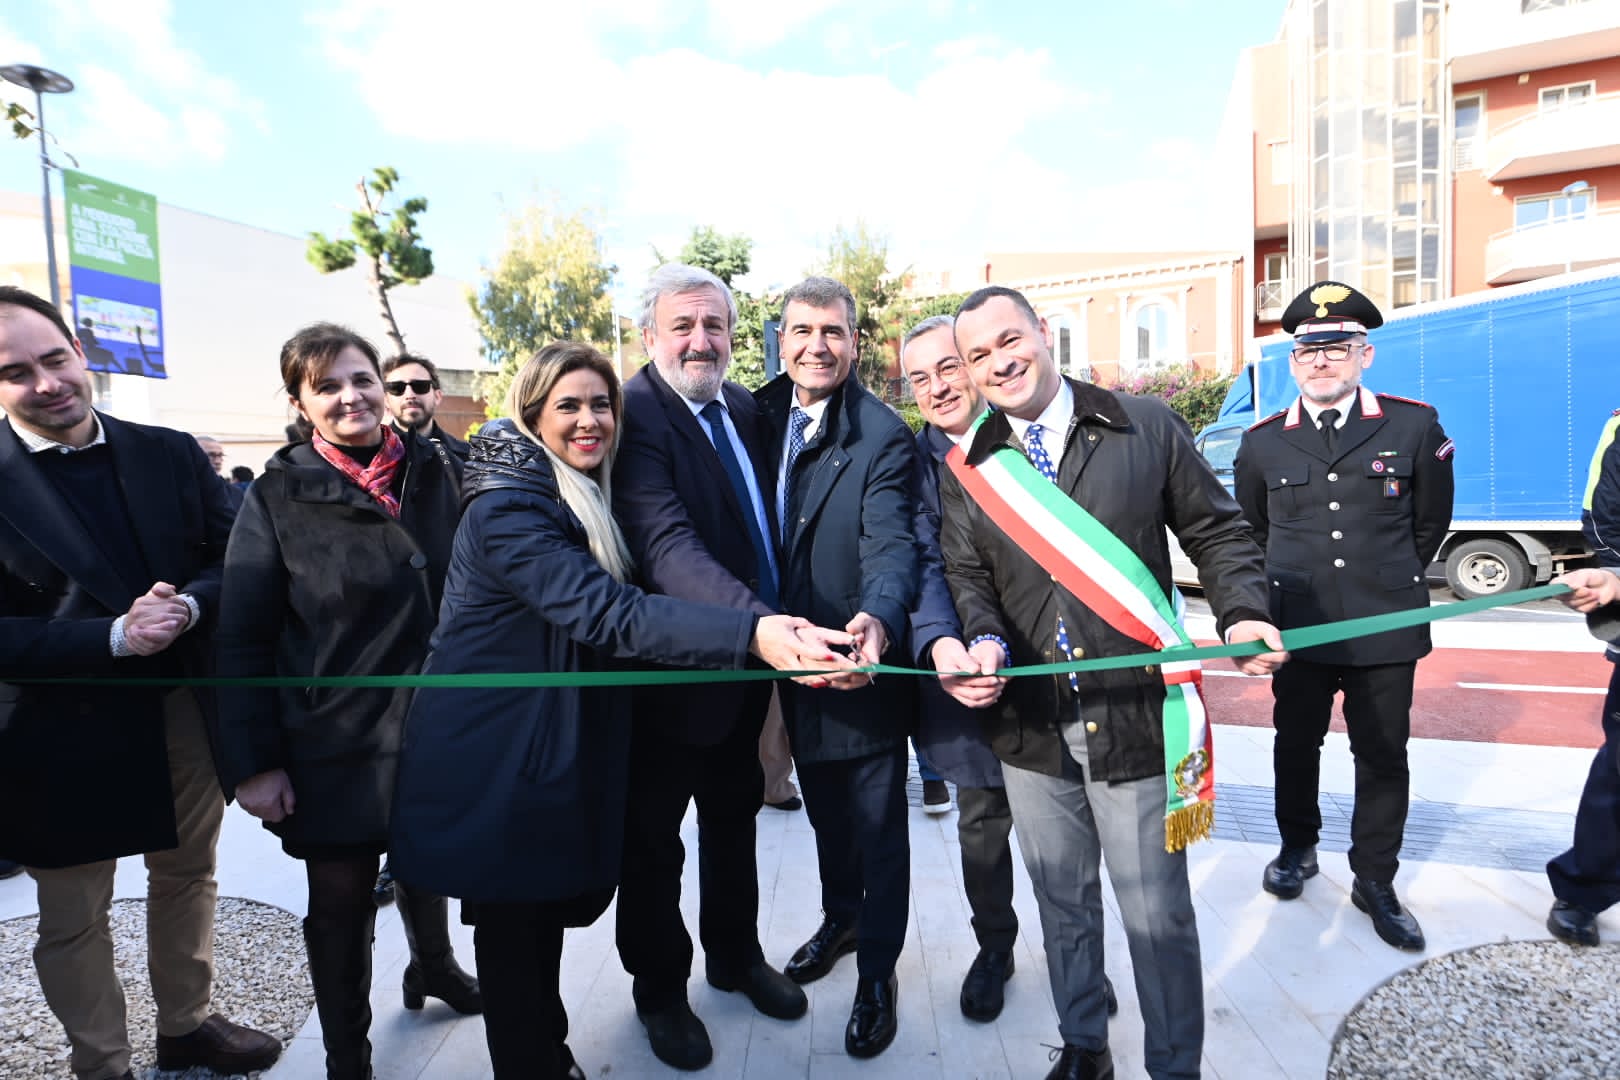 Galleria Emiliano e Maurodinoia inaugurano la piazza sociale di Modugno realizzata da FAL nei pressi della stazione e finanziata dalla Regione Puglia - Diapositiva 7 di 8